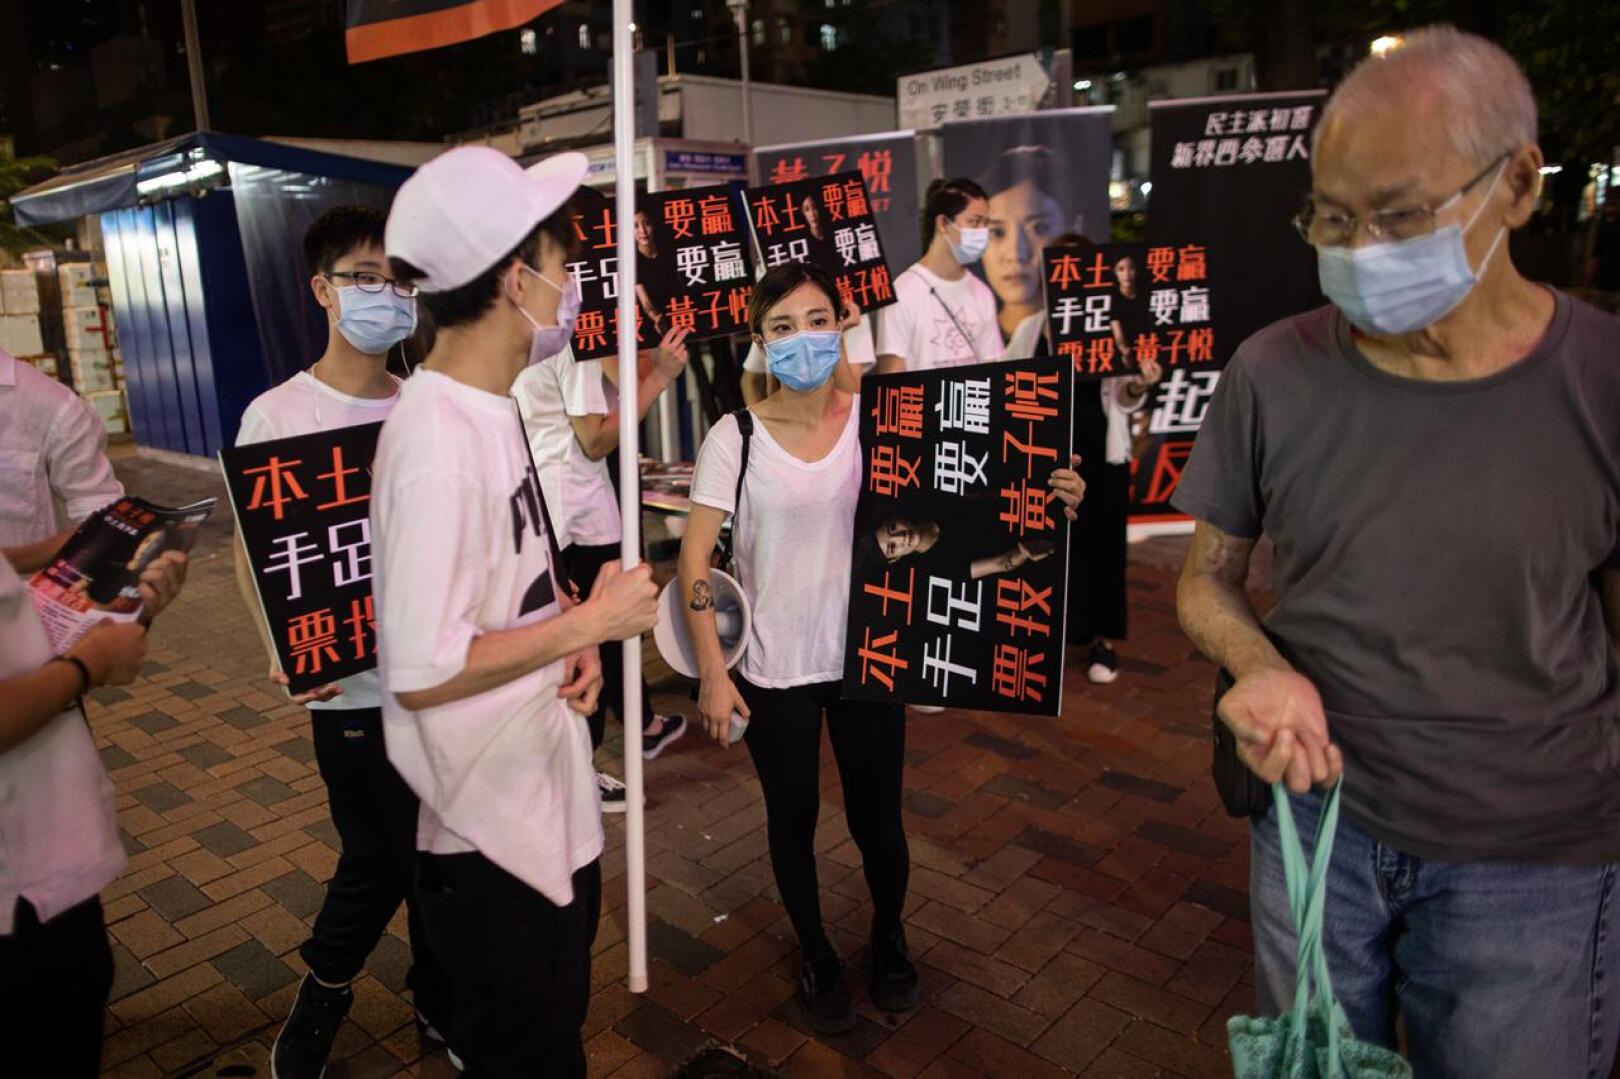 Wong Ji-yuet (keskellä) oli kampanjoimassa Hongkongin demokratialiikkeen esivaalia varten. Vaalissa valitaan ehdokkaat syksyn paikallishallintovaaleihin. Oppositio pelkää, ettei se voi voittaa vaaleja, koska hallitus estää heitä asettumasta ehdolle.